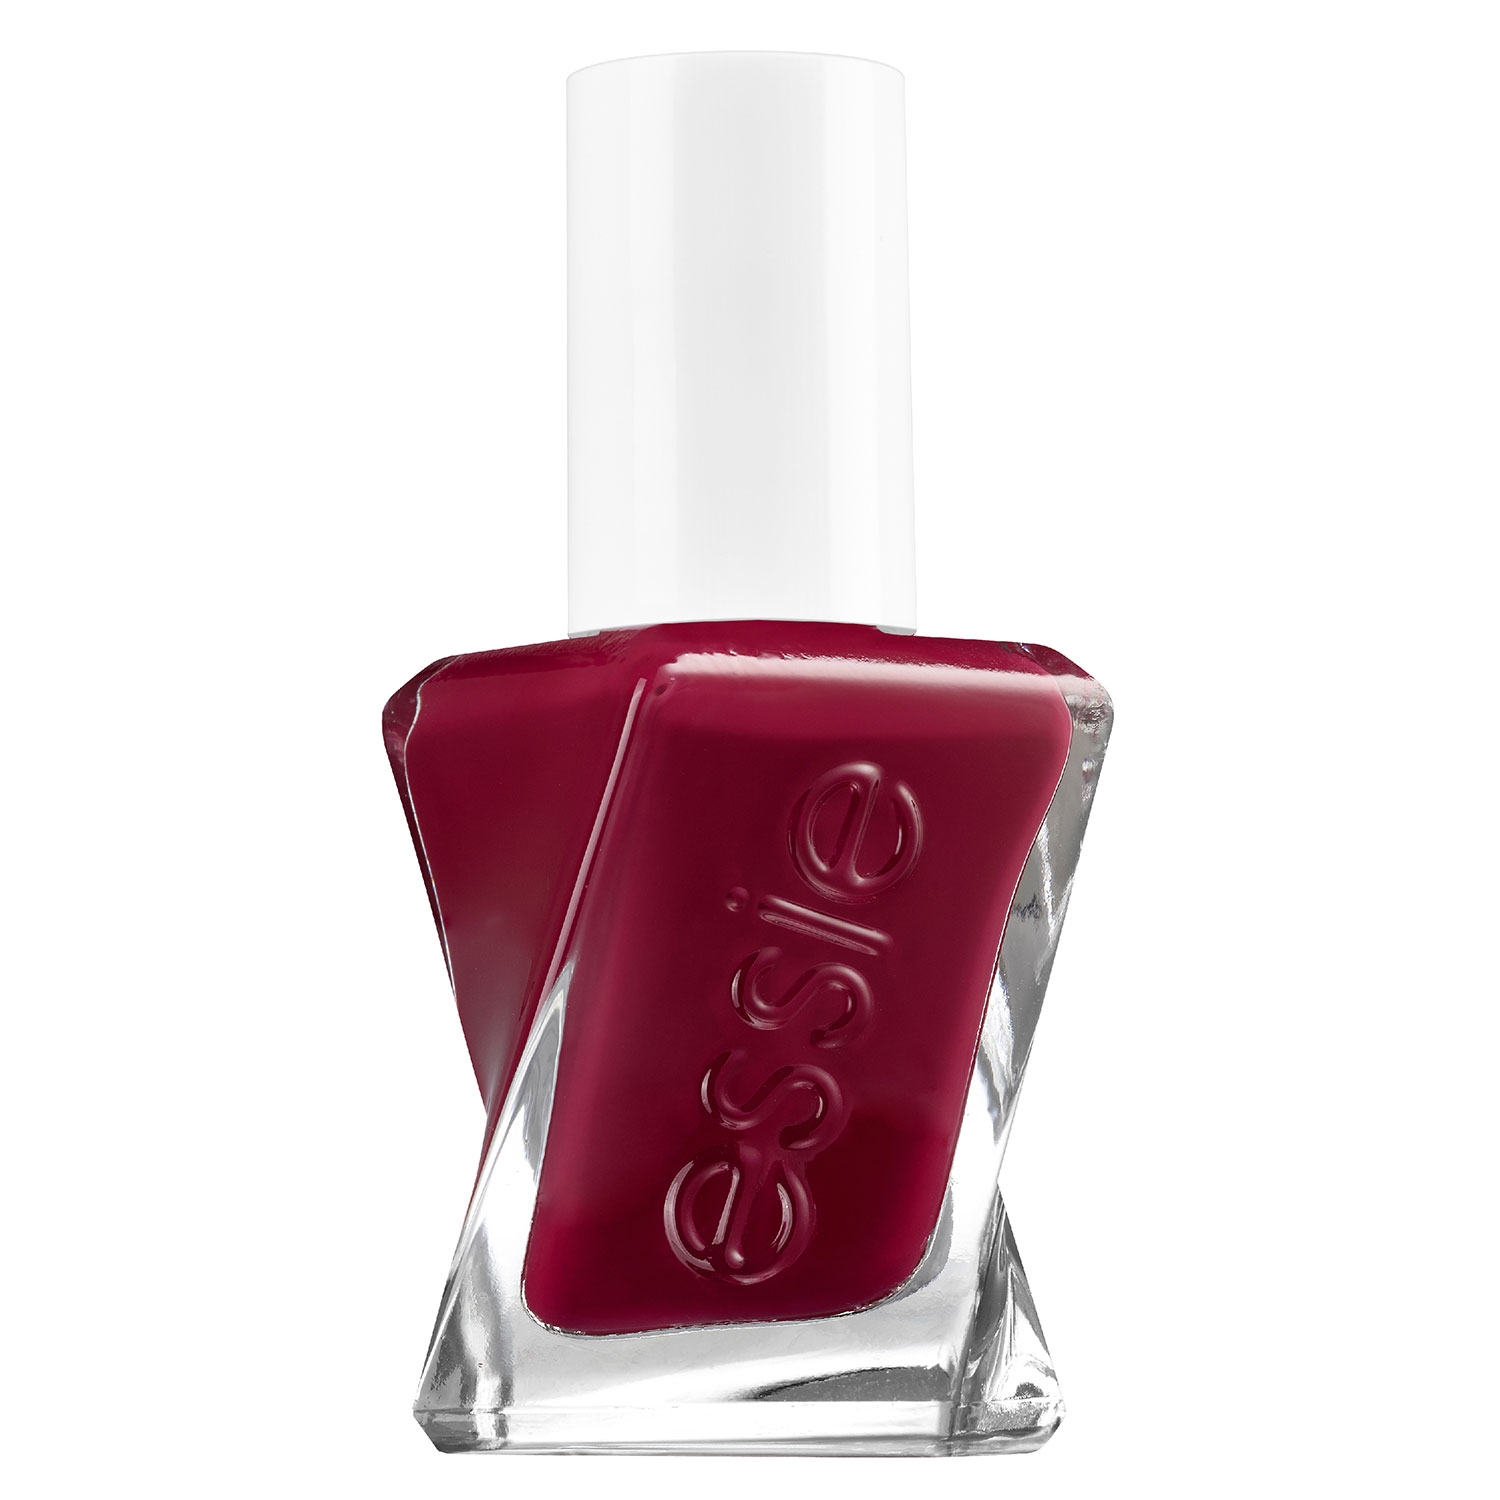 Produktbild von essie gel couture - paint the gown red 509